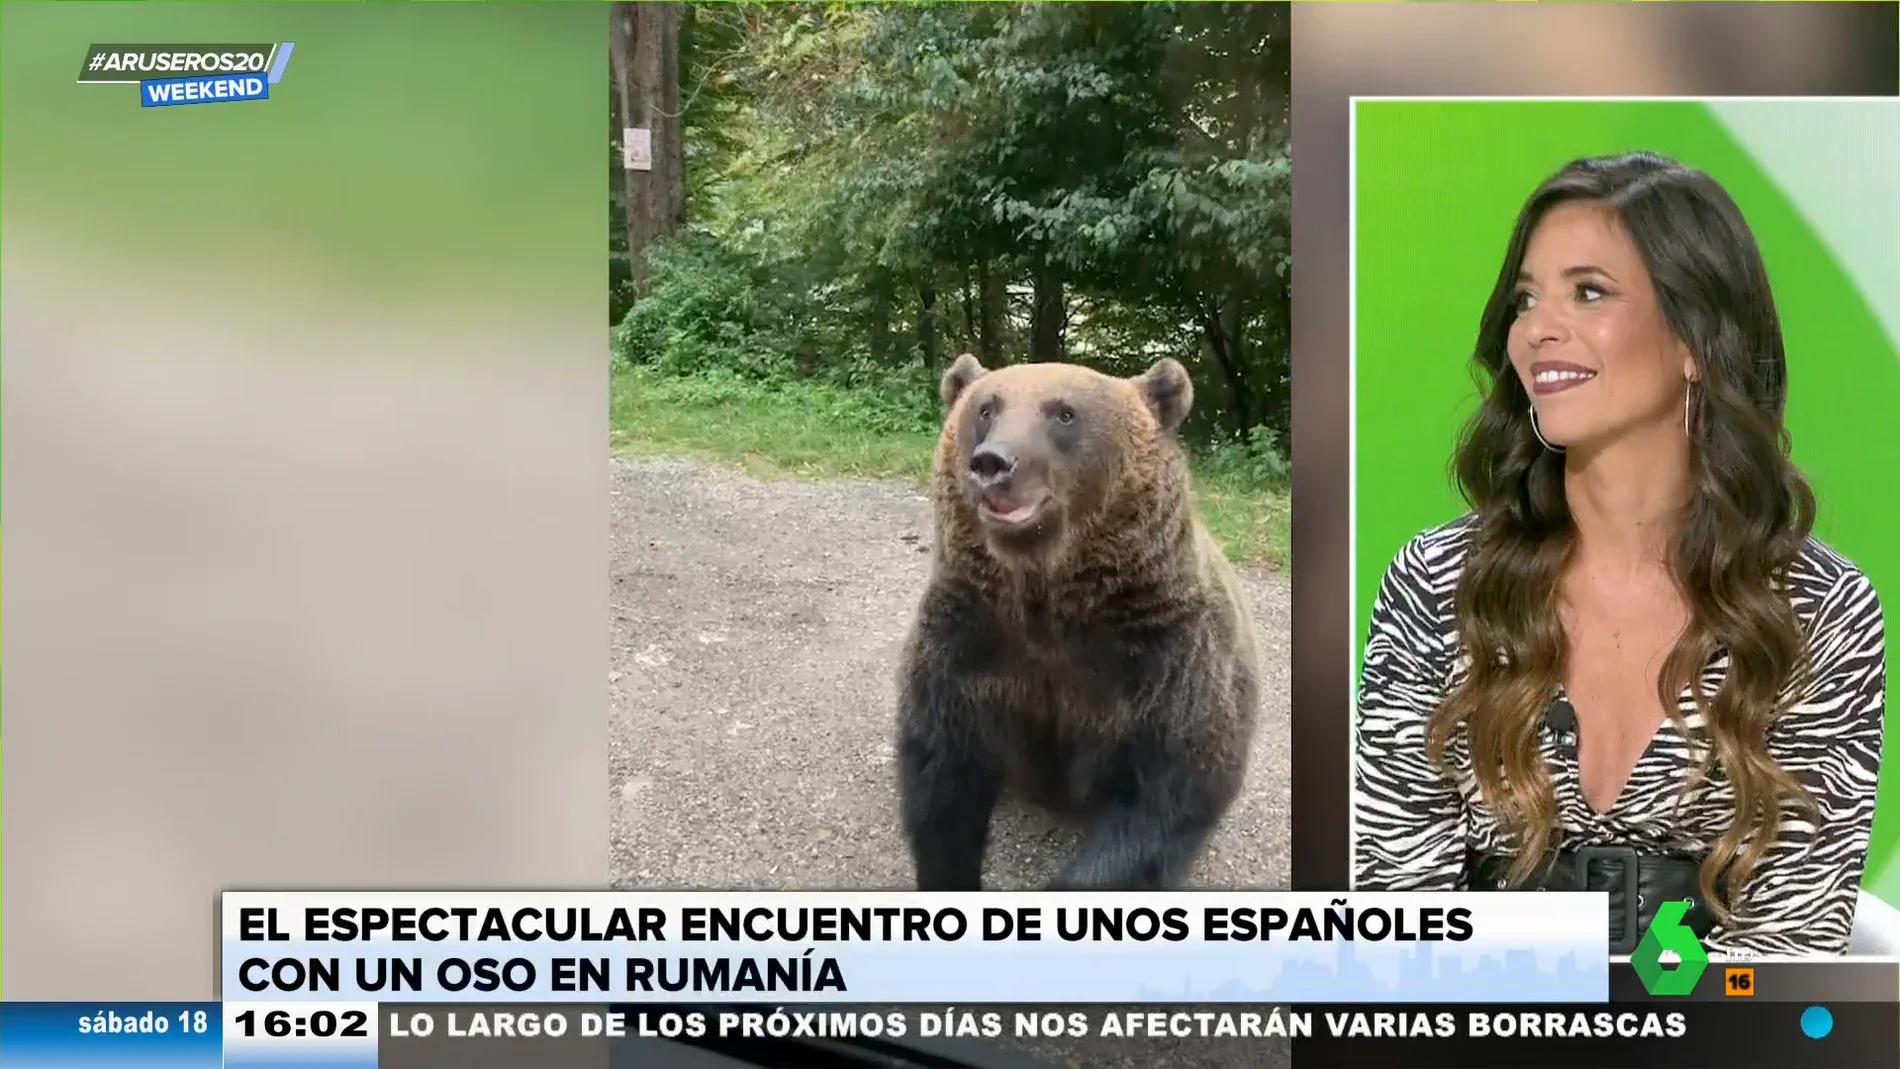 proteccion emulsión ligero La bióloga Evelyn Segura alerta sobre las consecuencias de dar comida a osos  salvajes